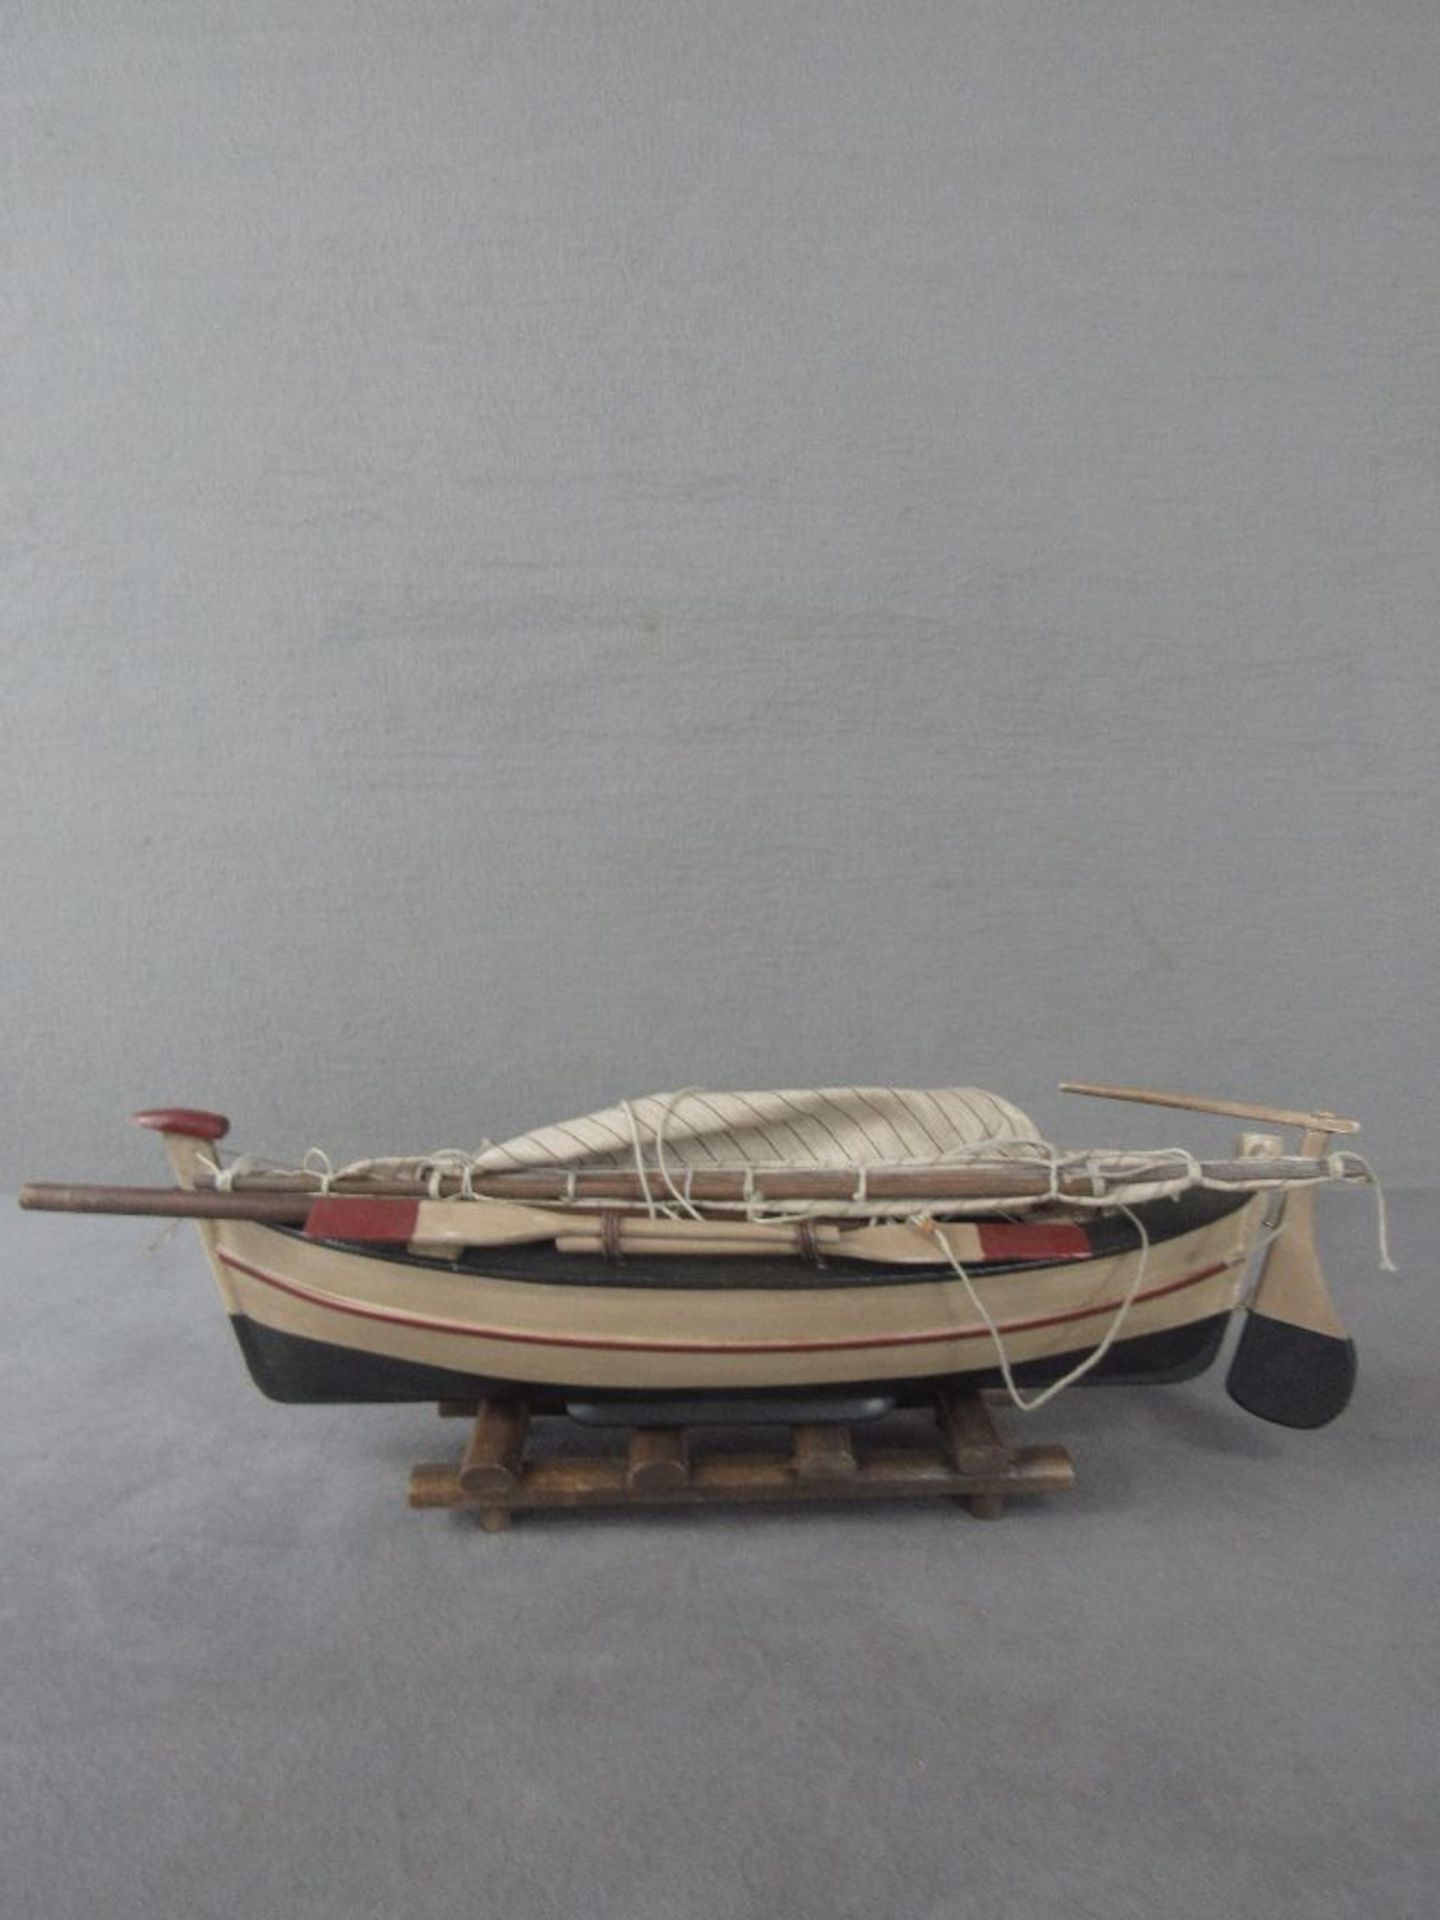 Modellschiff Holz 46cm lang - Image 5 of 6